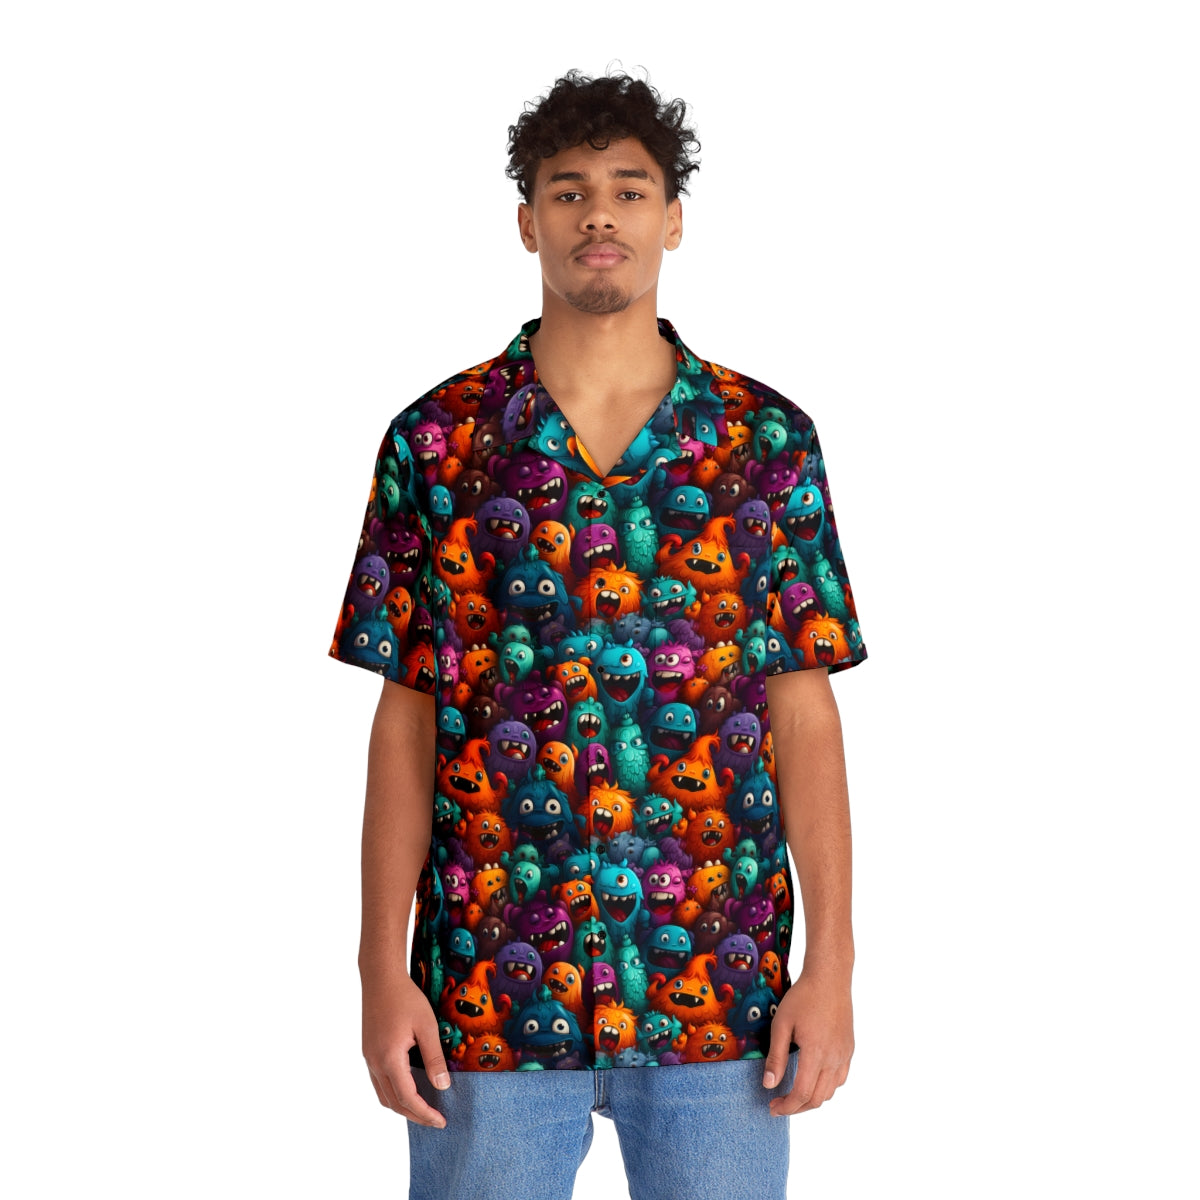 The Boo Bunch Aloha Shirt